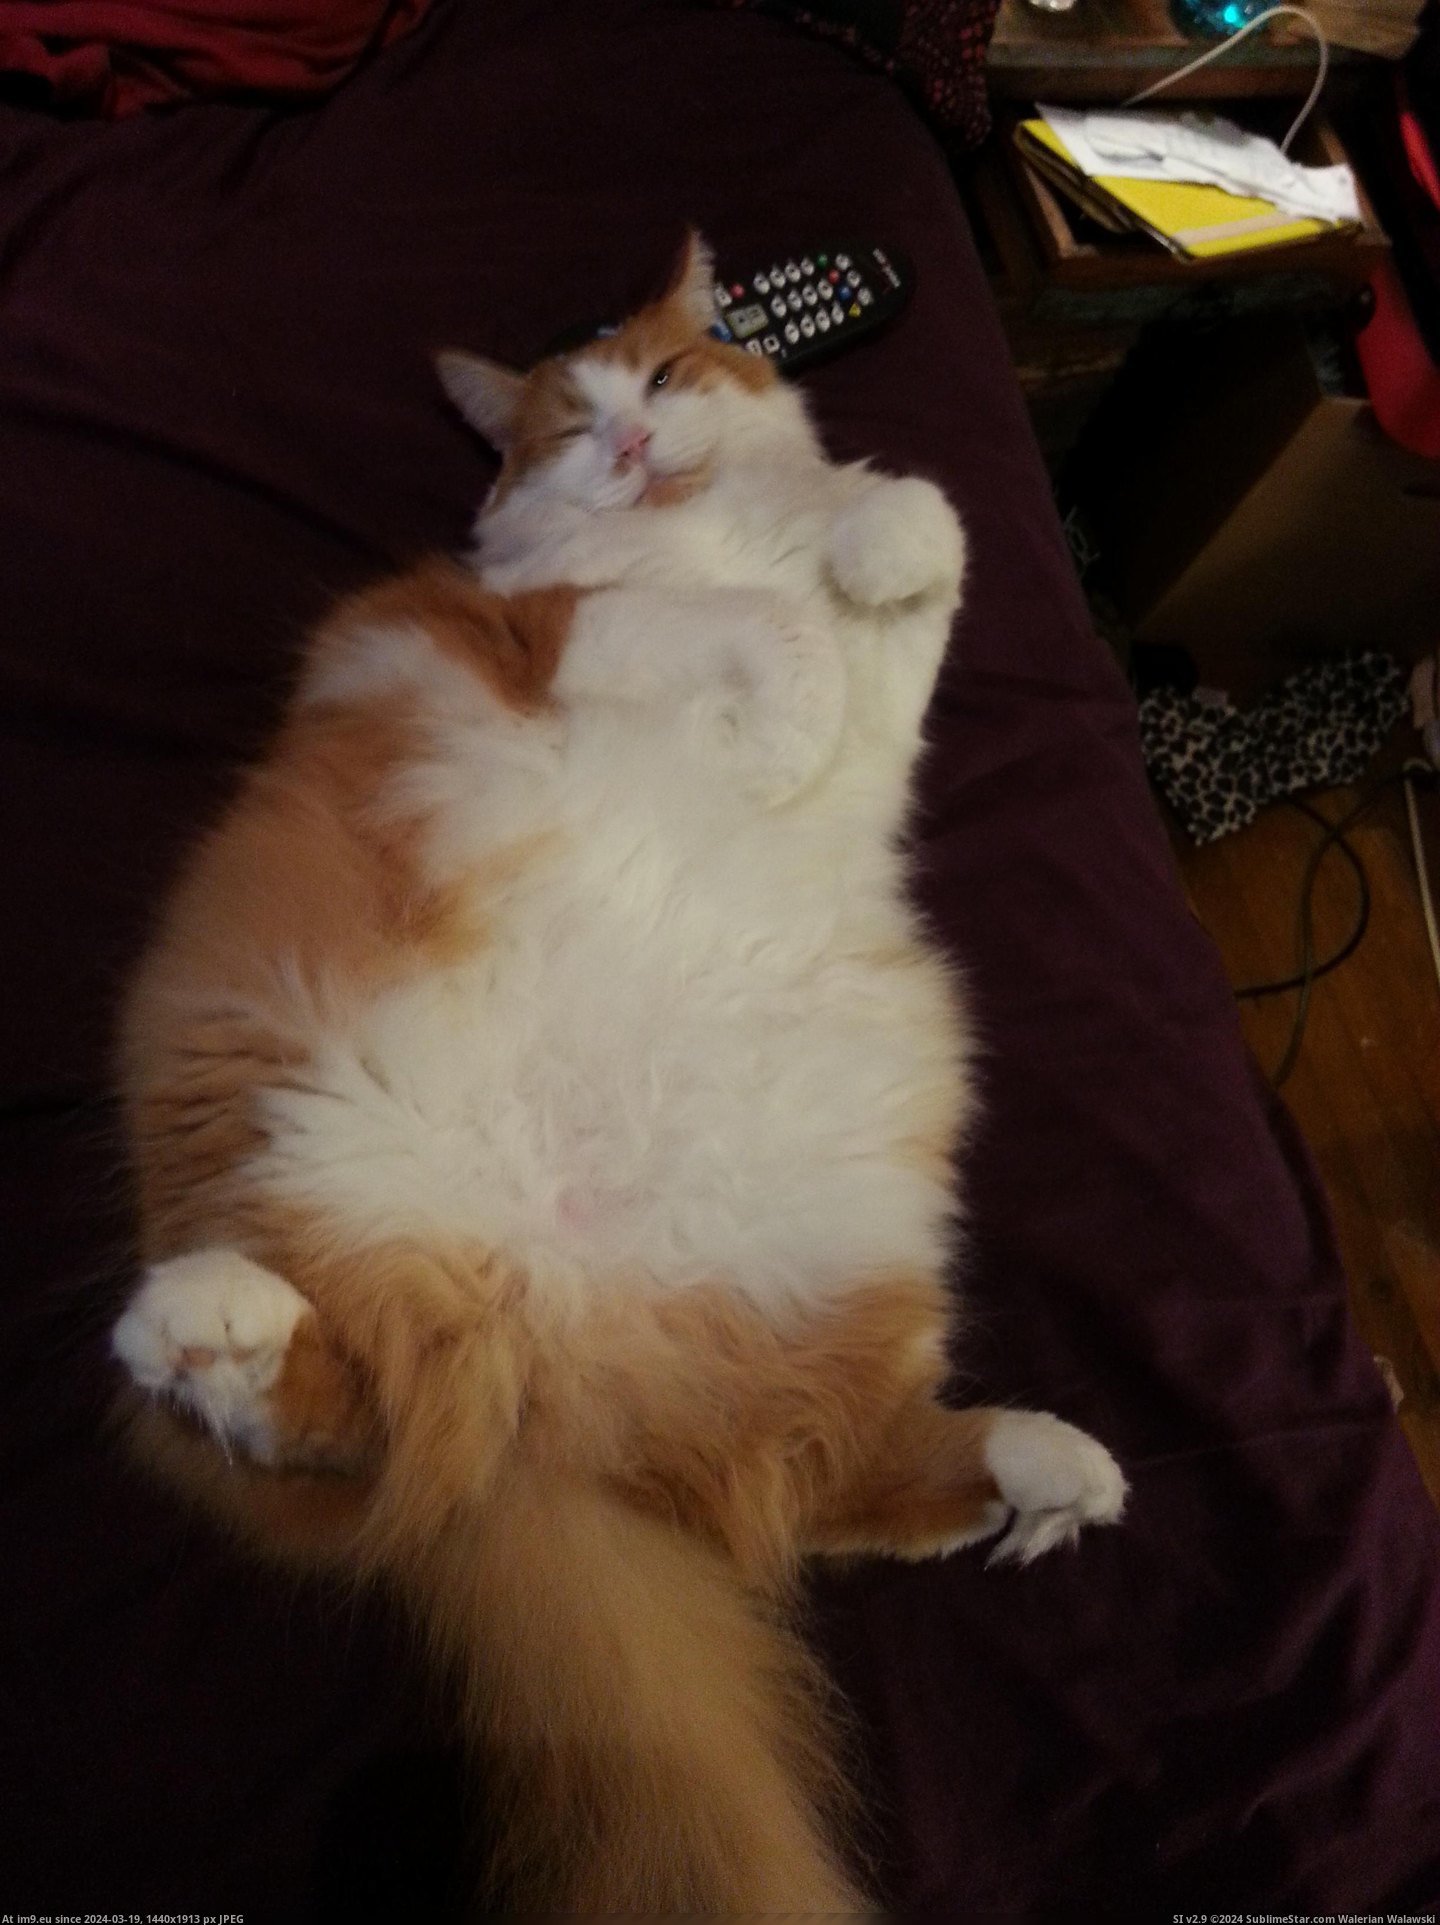 #Cats #Tummy #Dorito #Rub [Cats] Dorito post tummy rub Pic. (Изображение из альбом My r/CATS favs))